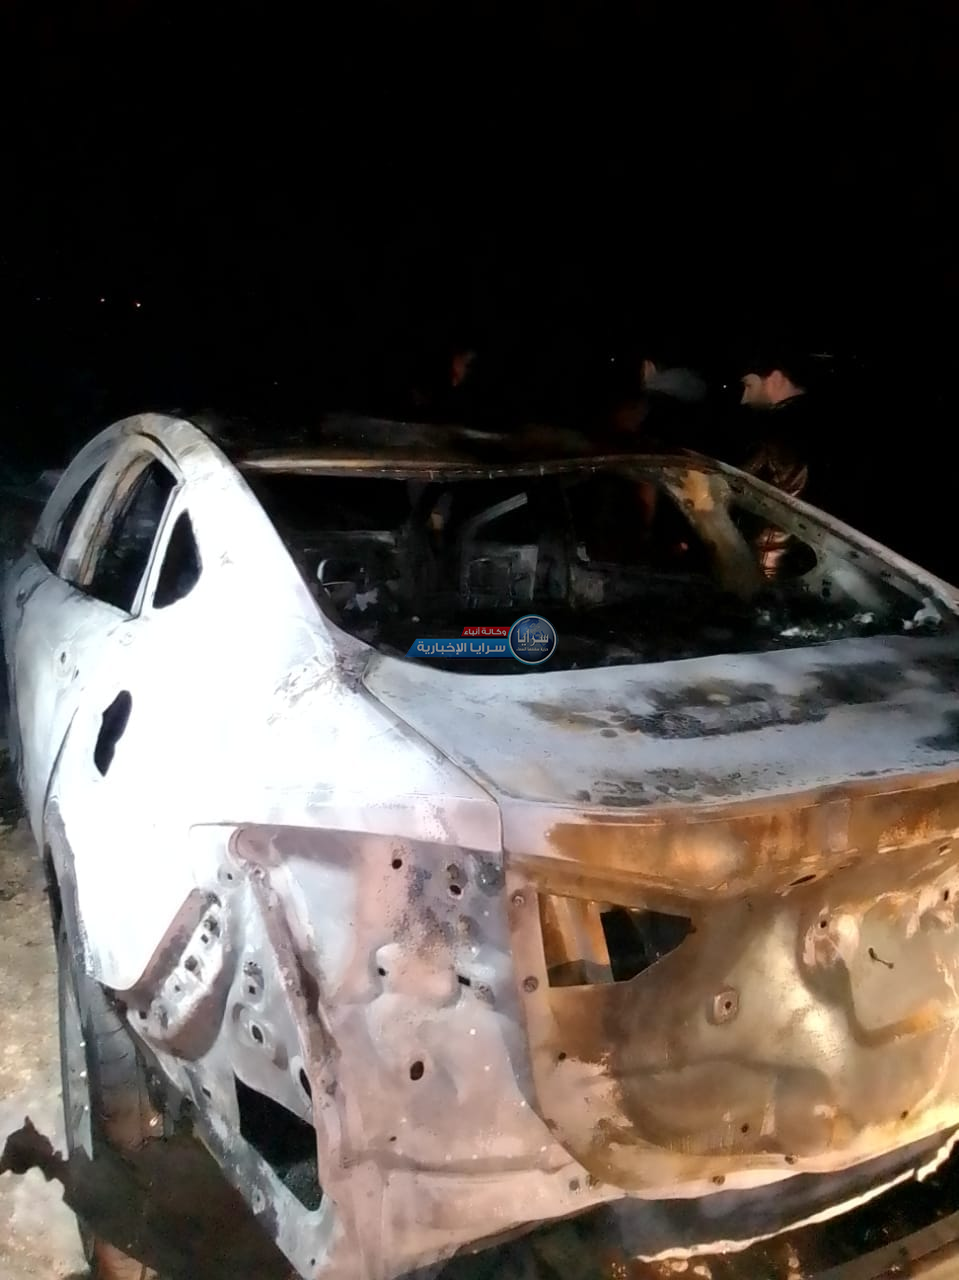 بالفيديو و الصور  ..  الامن لـ"سرايا": مجهول قييد "سائق تطبيقات" و اشعل النار في مركبته على طريق المطار